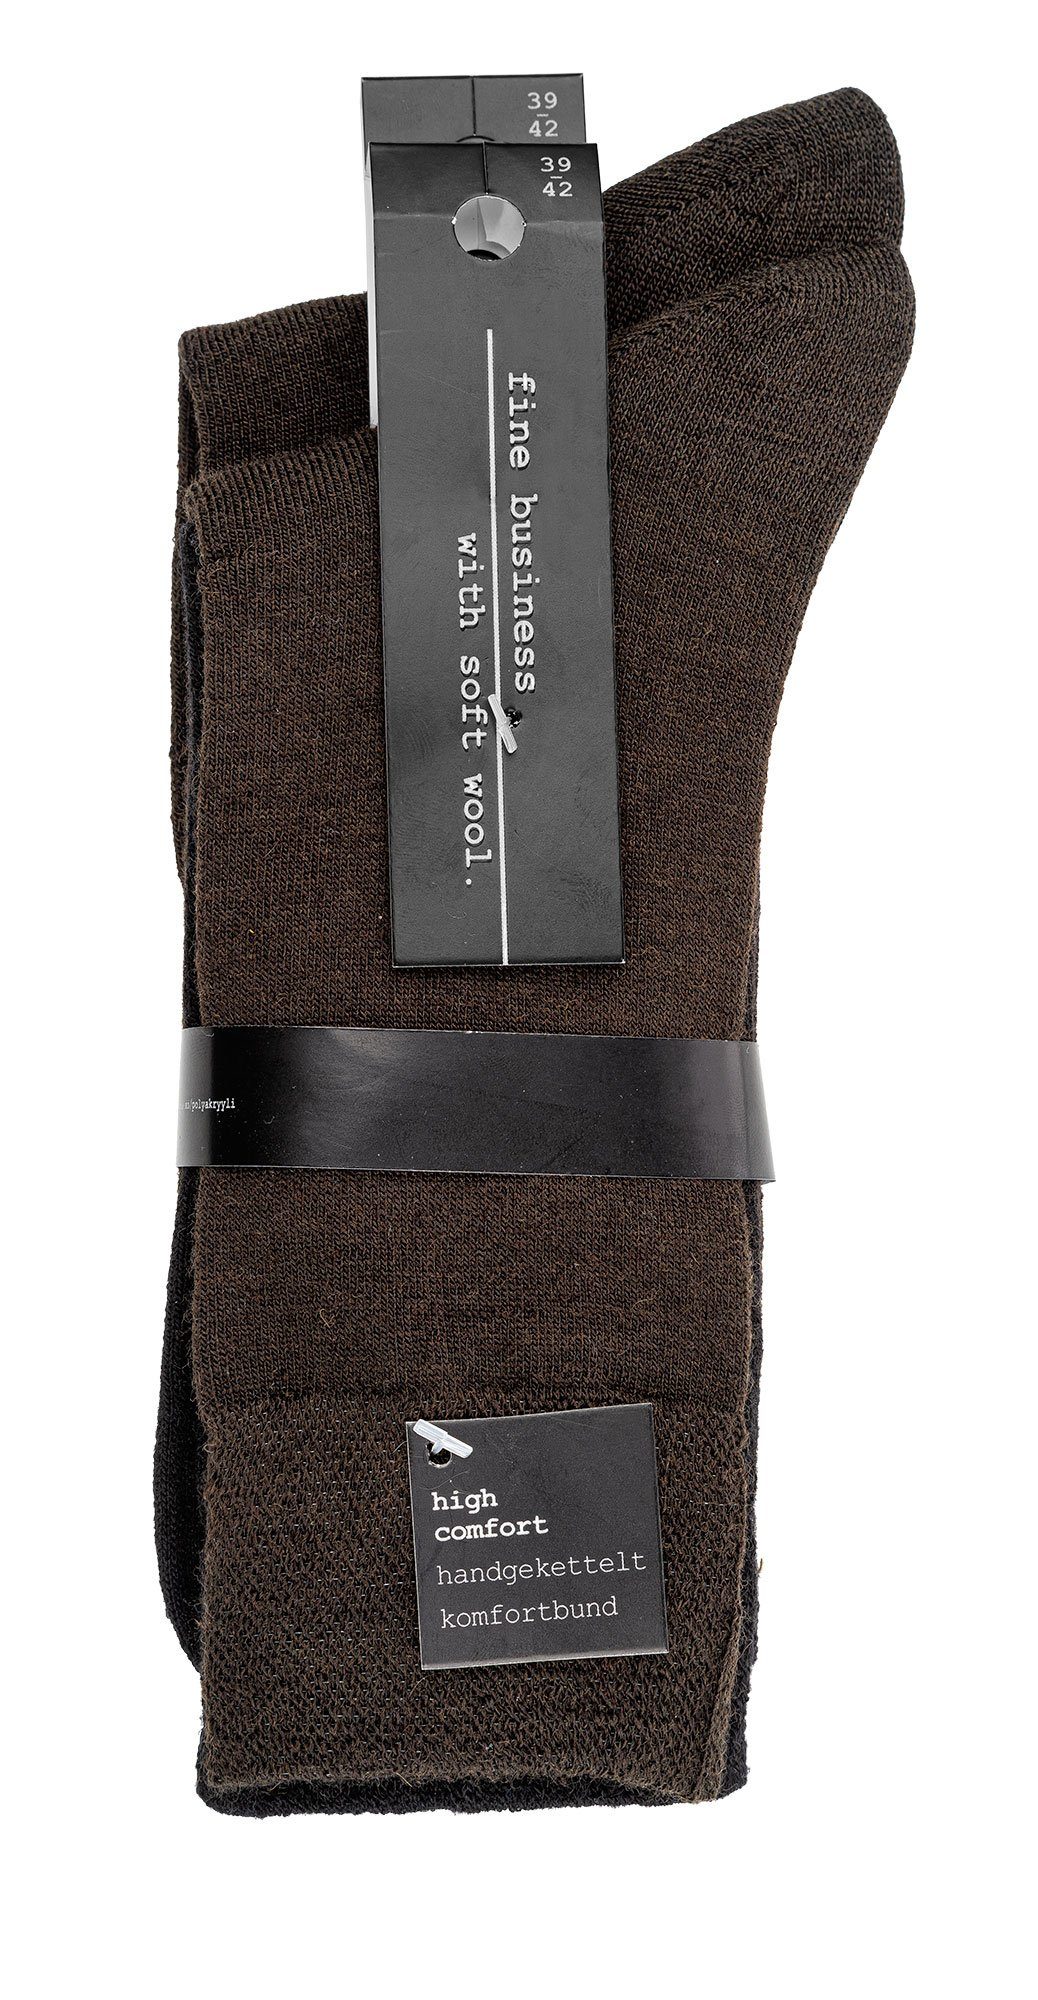 TippTexx 24 Businesssocken 2 Paar Business-Komfort-Socken mit Wolle, handgekettelt, Piqué-Bund Dunkelbraun